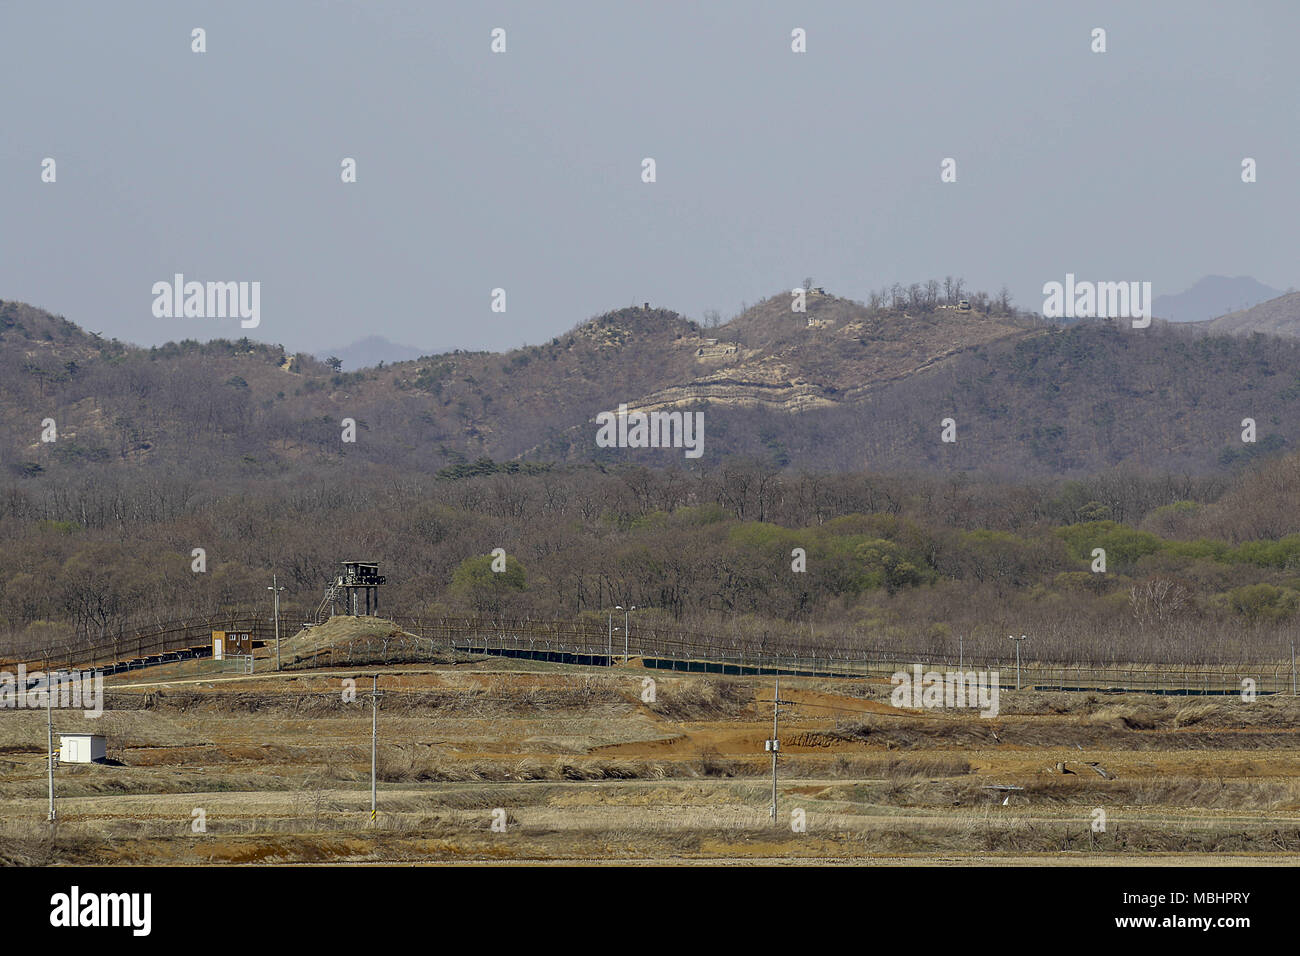 Cheorwon, GANGWON, Südkorea. 11 Apr, 2018. April 11, 2018 - Goyang, Korea - koreanische Krieg Schlacht auf dem weißen Pferd und der zivilen Kontrolle in Cheorwon, Südkorea. Der Schlacht auf dem weißen Pferd war ein weiterer in einer Reihe von blutigen Schlachten für dominante hilltop Positionen während des Koreakrieges. Baengma - goji war ein 395-Meter (1.296 ft) Hill in den Eisernen Dreieck, von Pyonggang an seiner Spitze und Gimhwa - eup und Cheorwon an seiner Basis gebildet, war eine strategische Transportroute in der zentralen Region der koreanischen Halbinsel. White Horse war der Kamm einer bewaldeten Hügel Masse, die in einer n Erweiterte Stockfoto